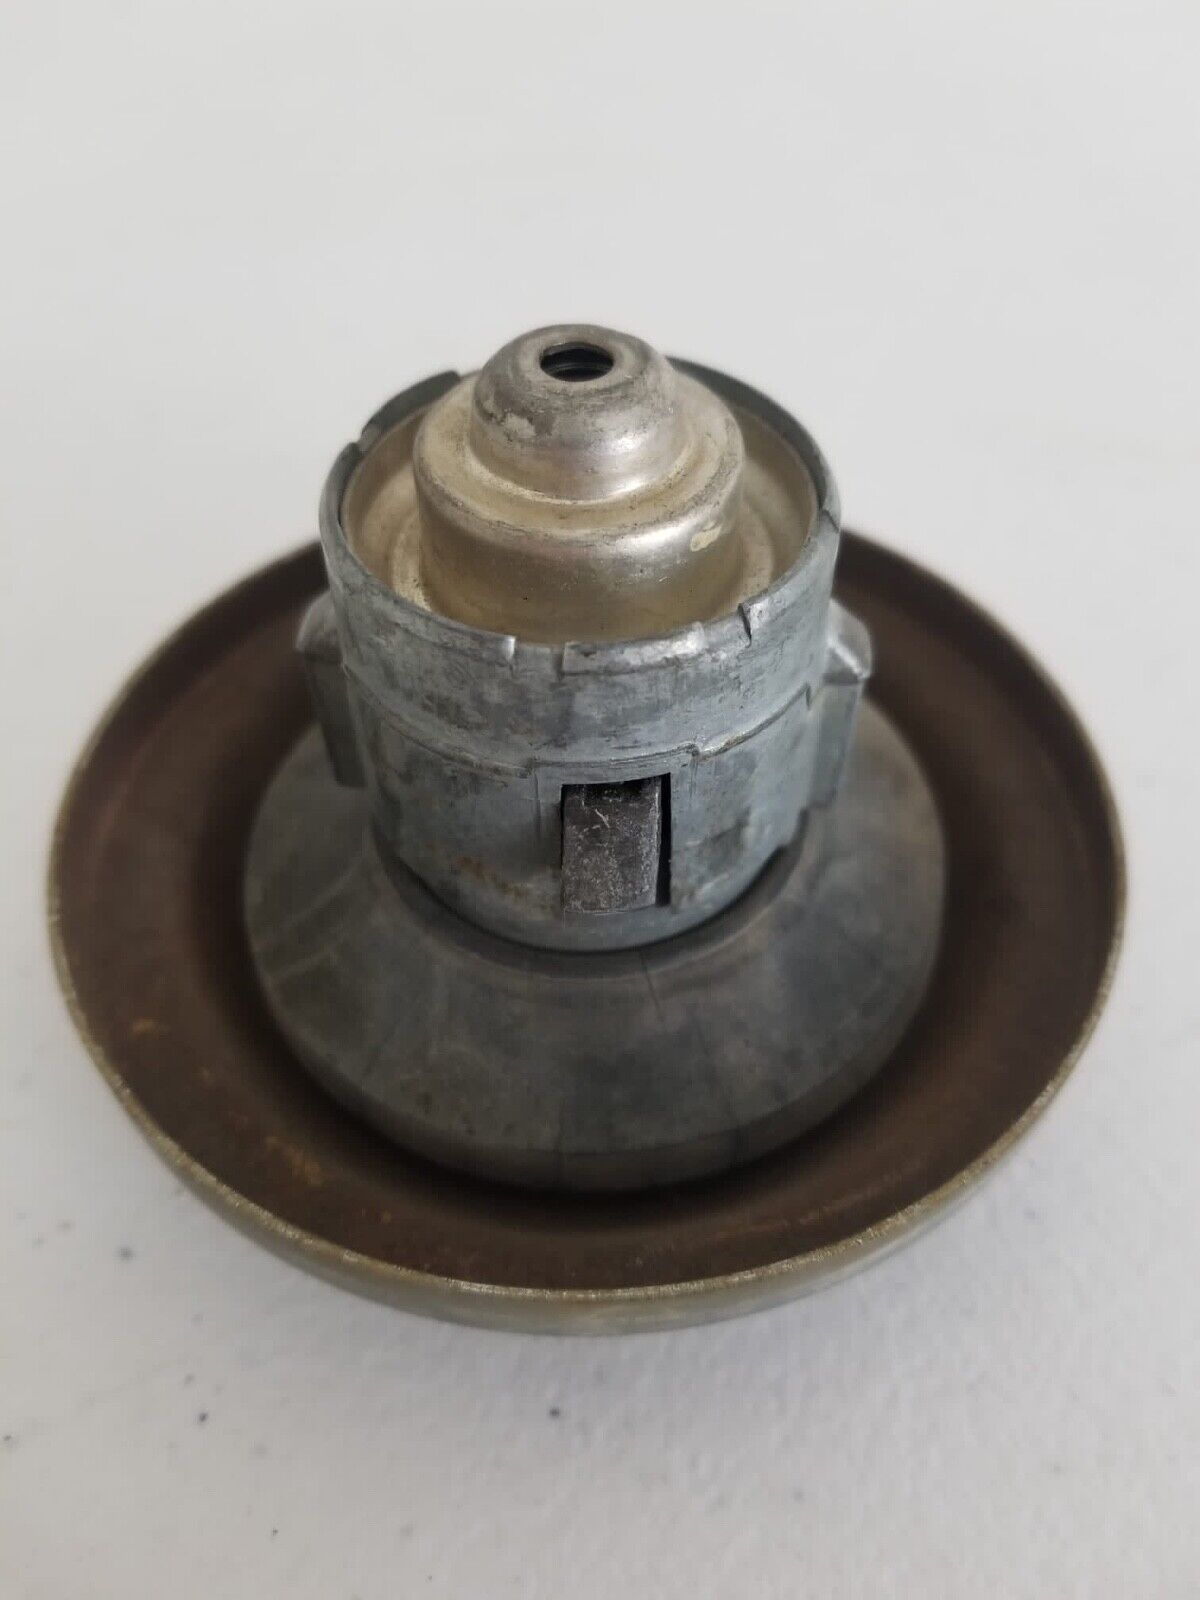 Vintage Automotive Gas Cap, 1970s-1980s - Essential Collectible for Restoration - TreasuTiques